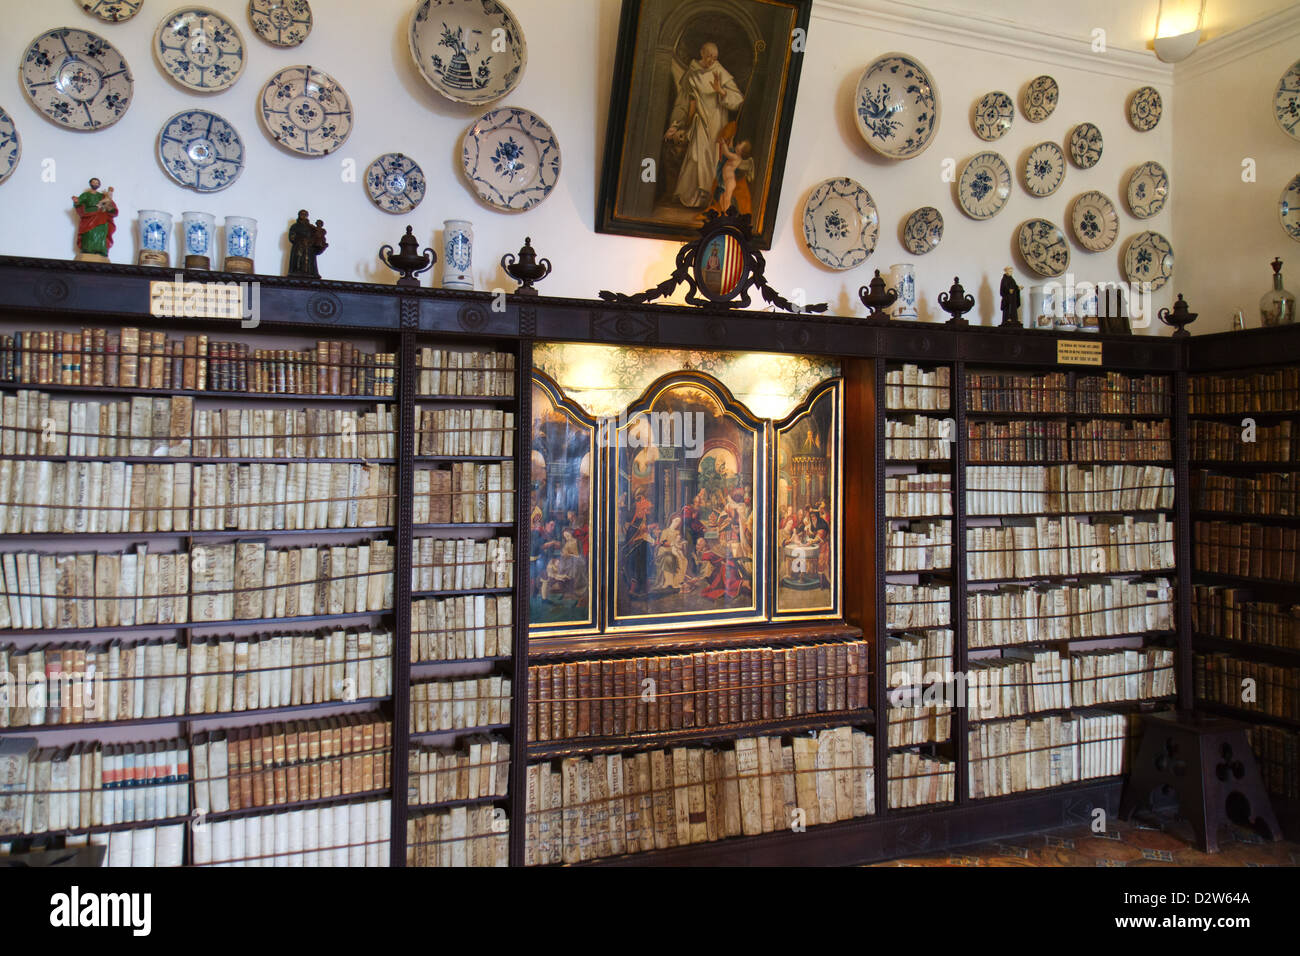 Bibliothèque dans la Chartreuse royale (Real Cartuja), Valldemossa, Majorque, Espagne. Banque D'Images